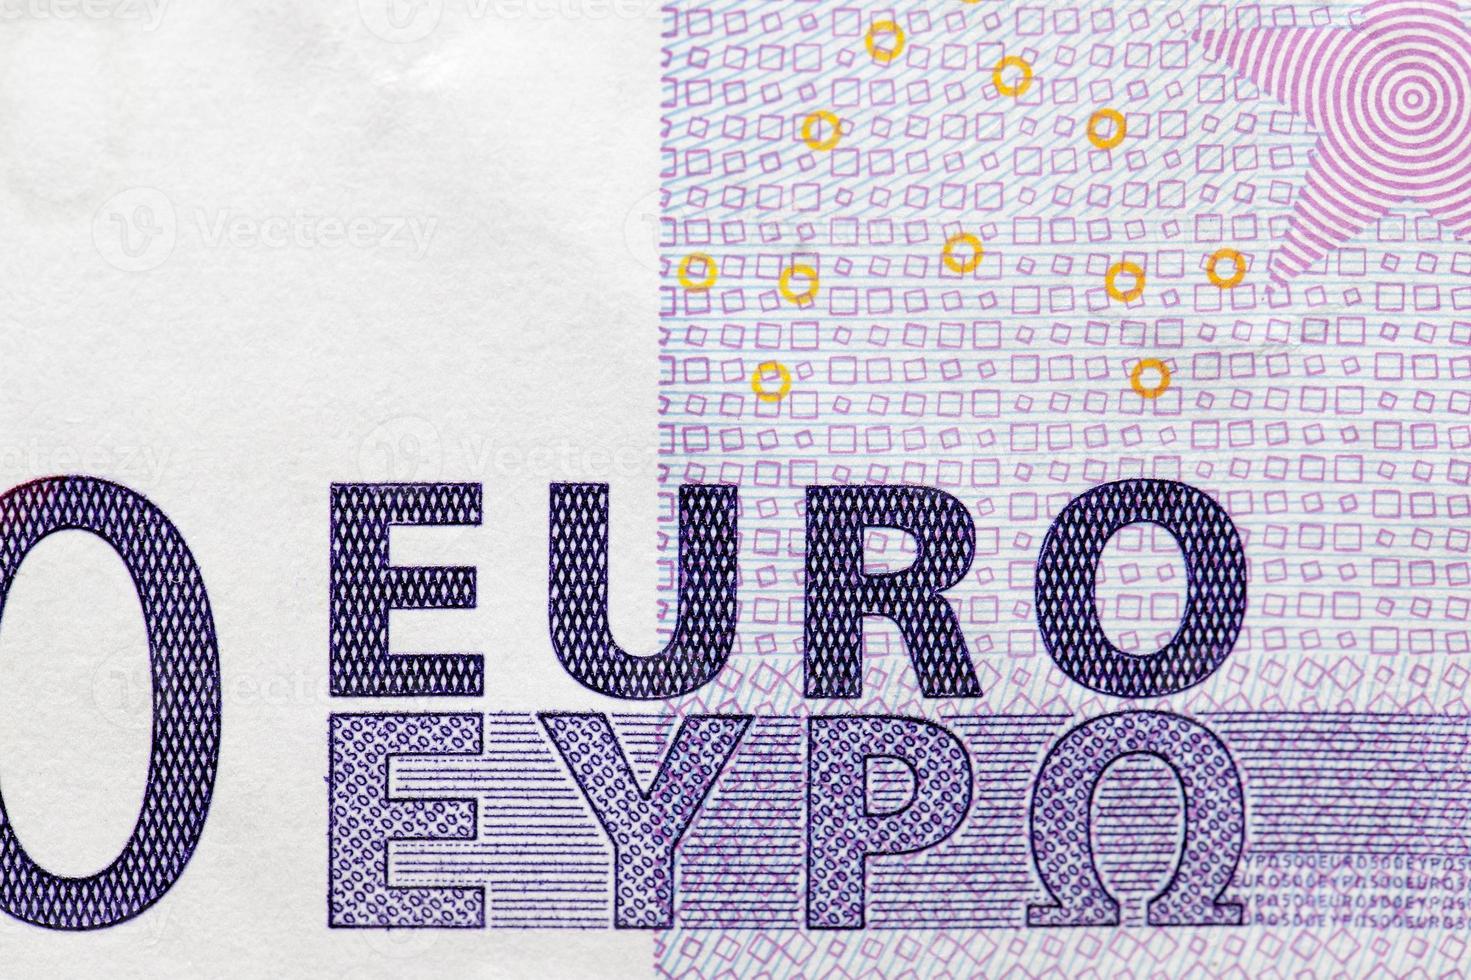 euro geld close-up foto